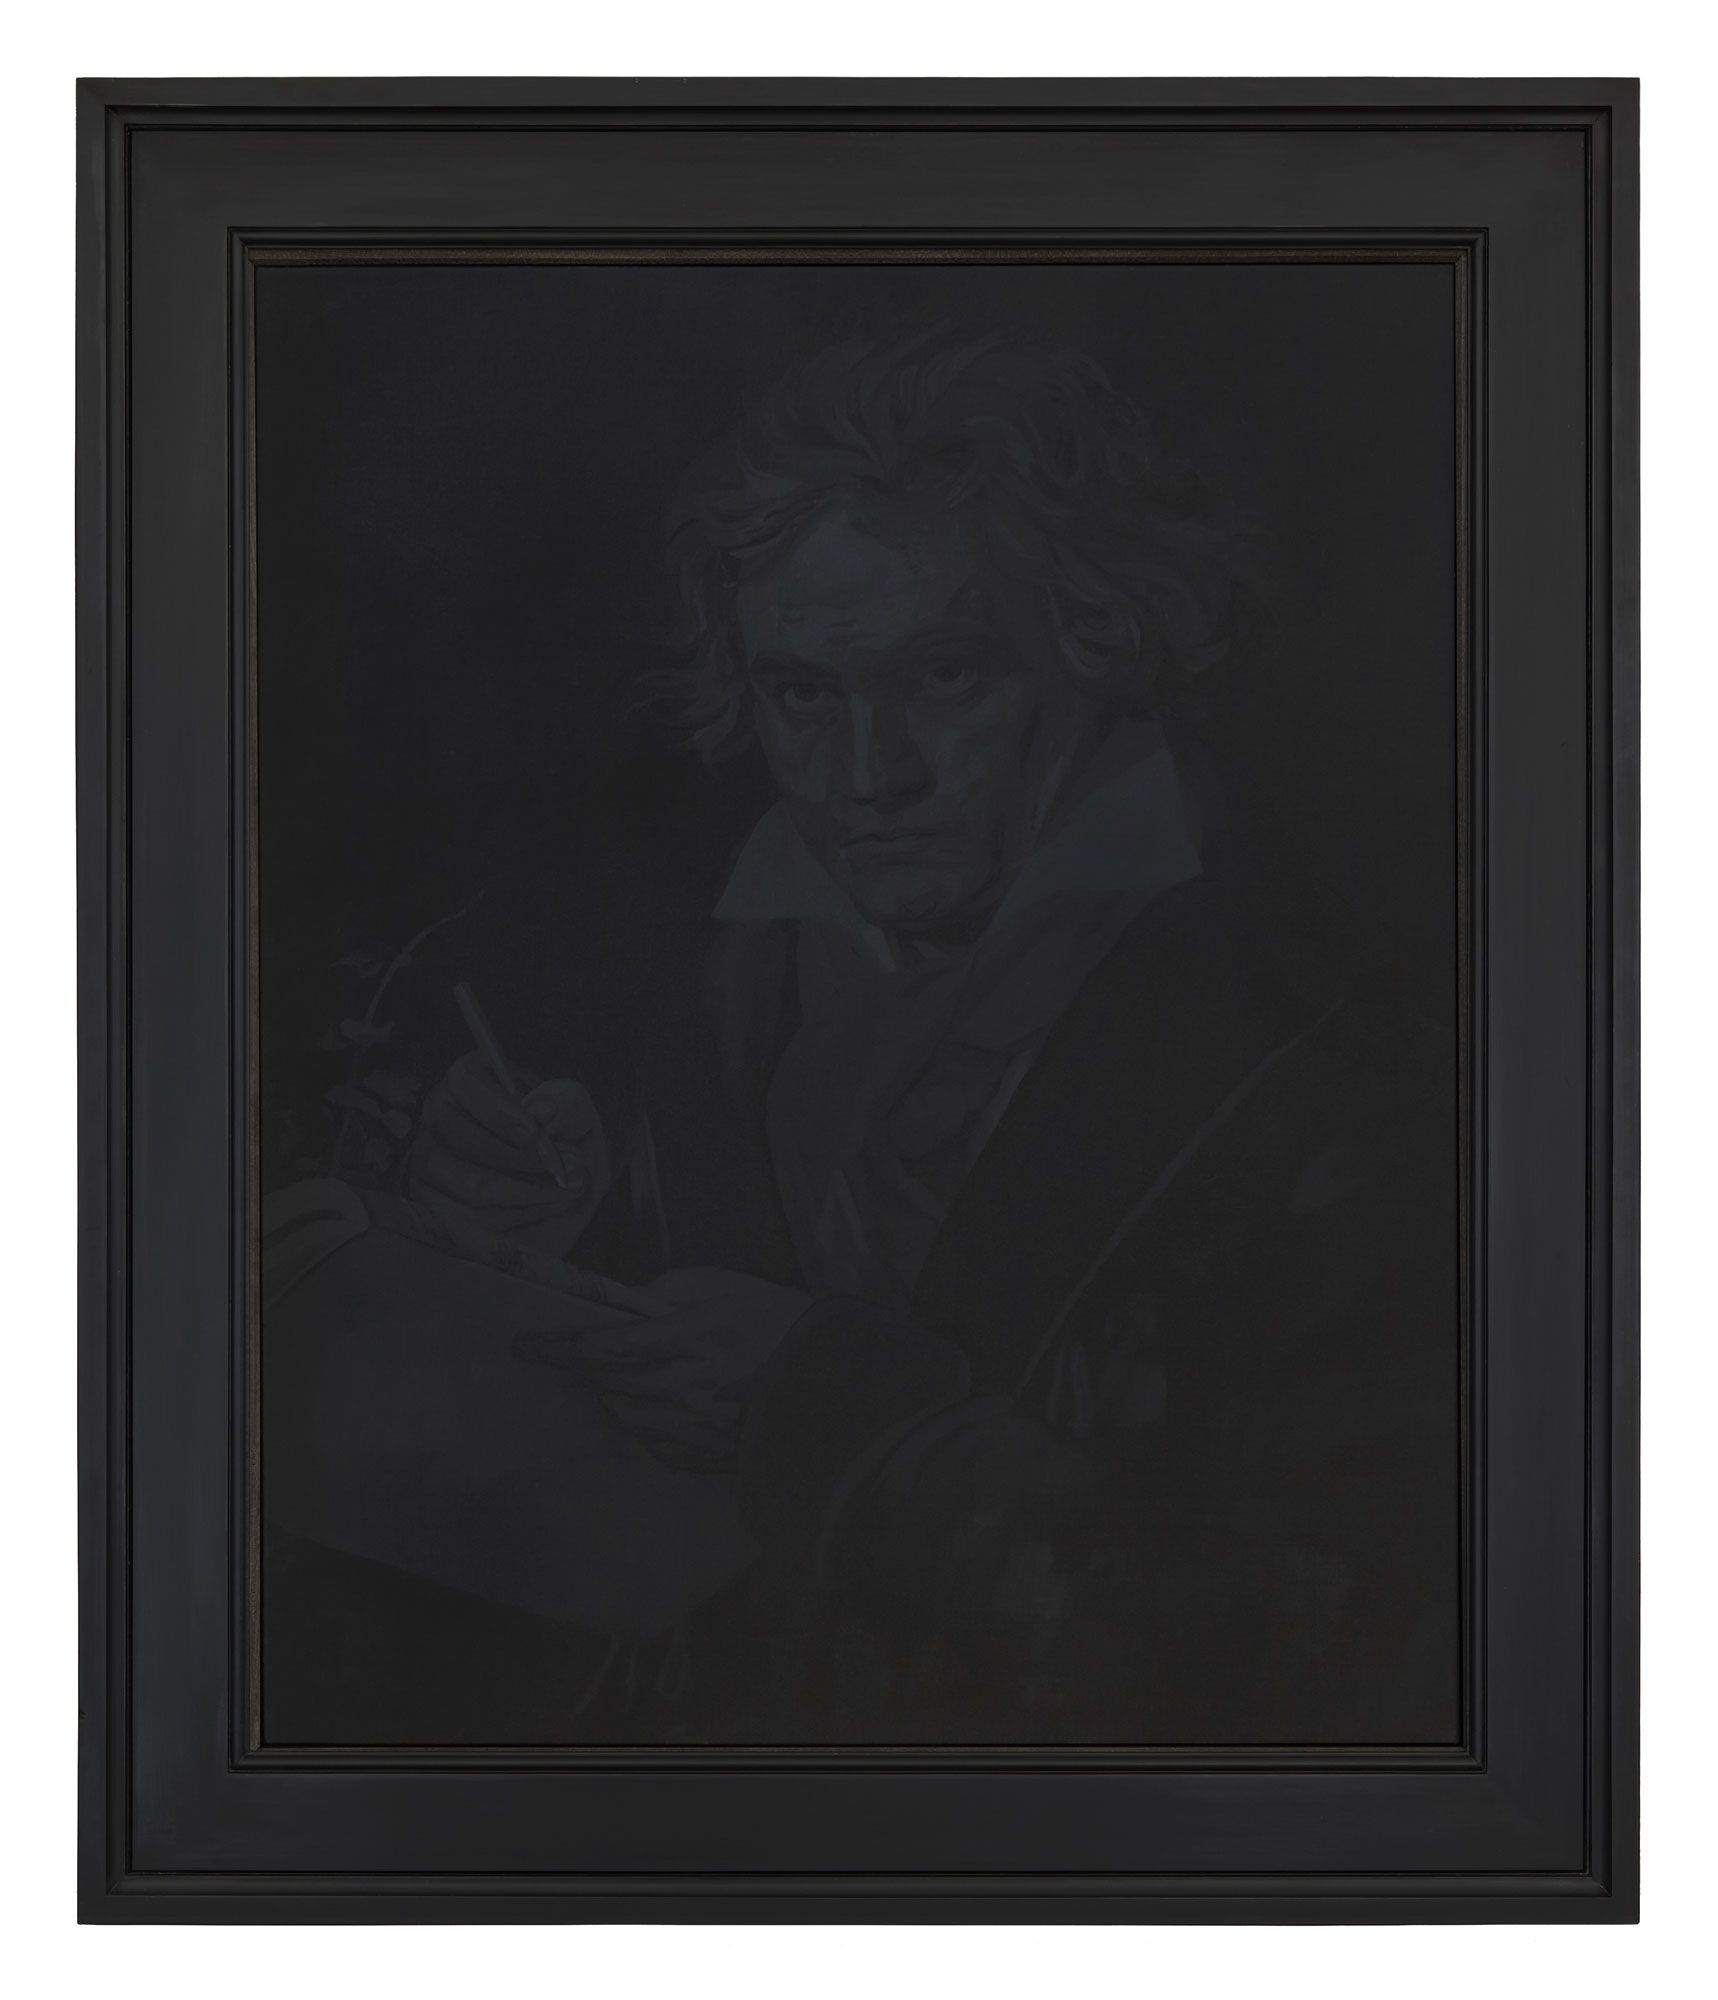 Black oil paining in black frame of Beethoven based on Joseph Karl Stieler classic image.